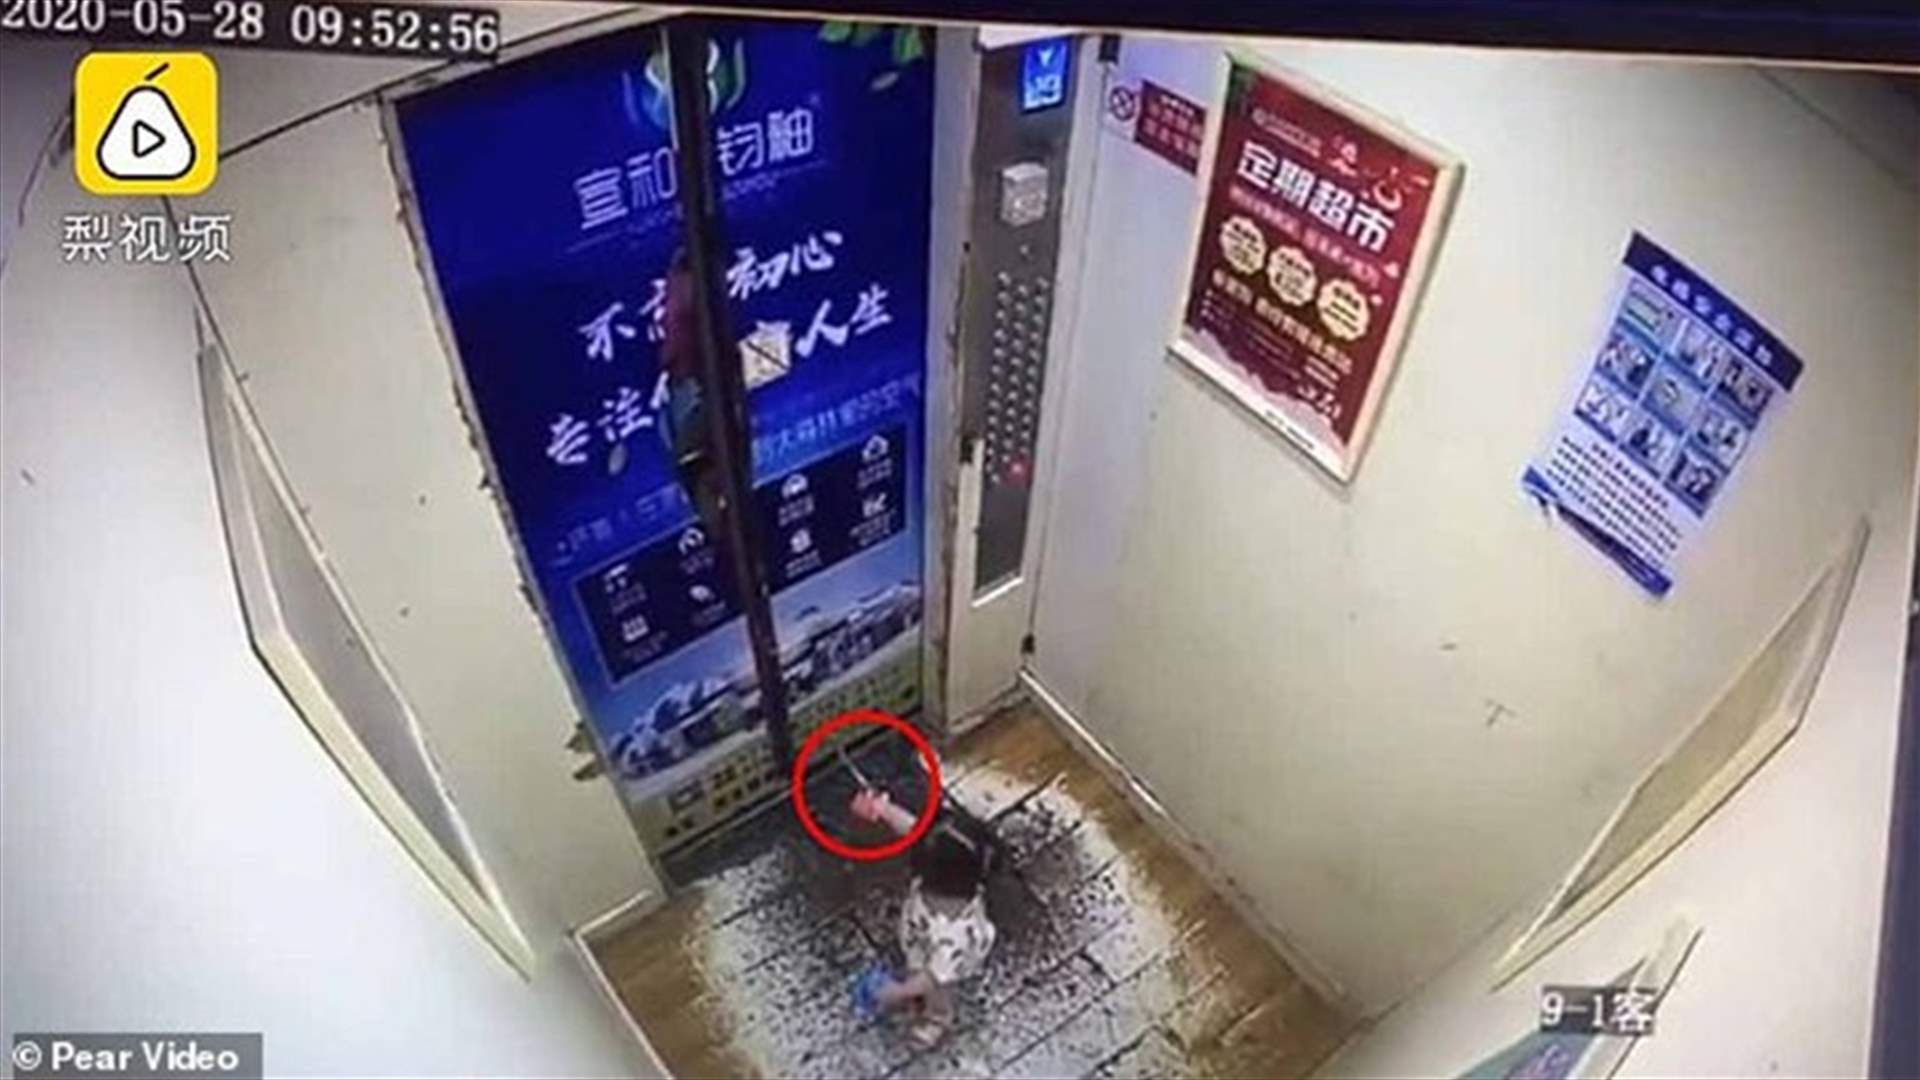 فيديو مرعب لطفلة صغيرة علقت على باب مصعد أوتوماتيكي